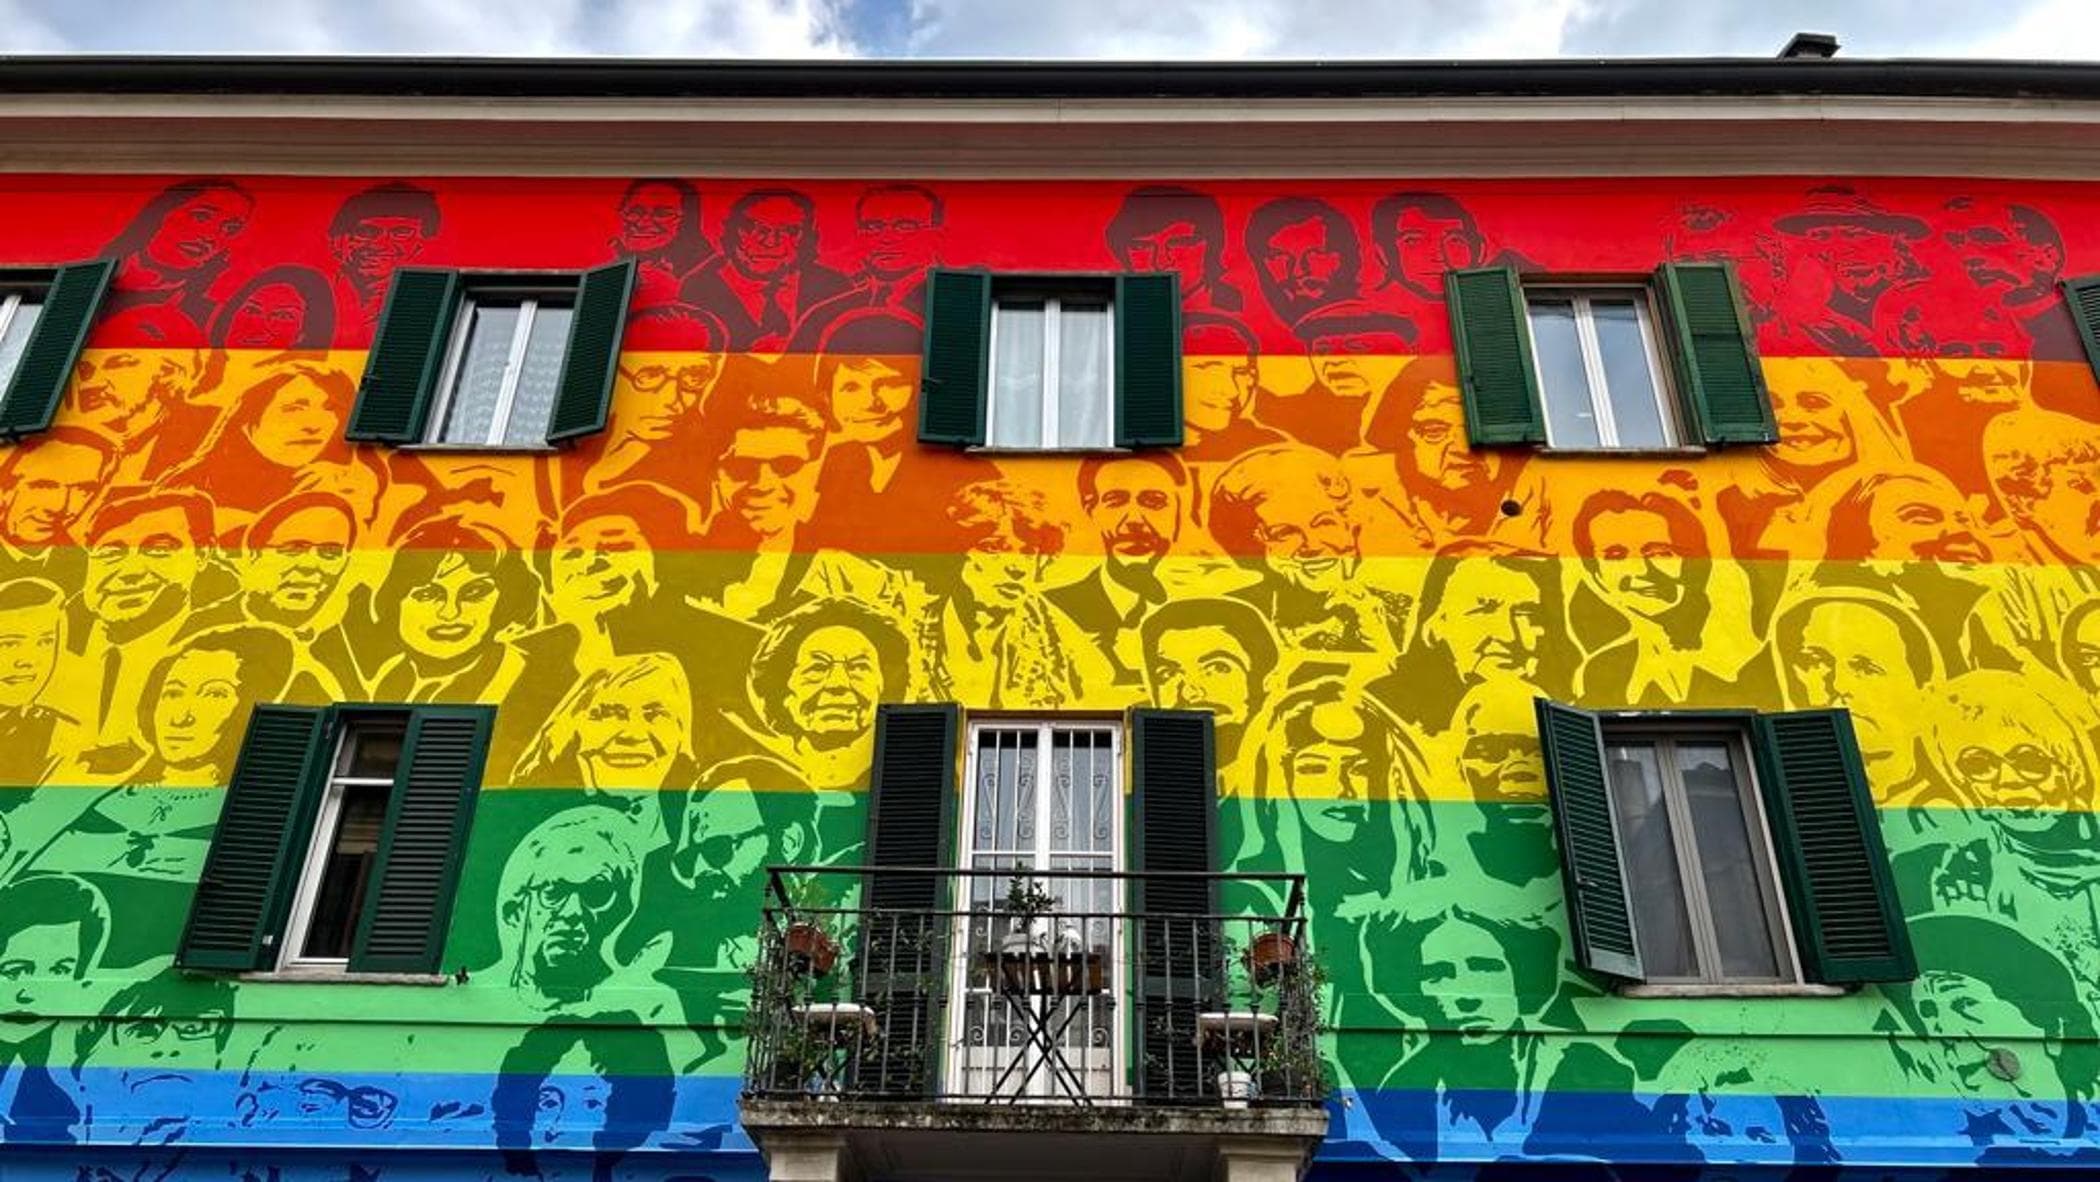 Murale dei Diritti Umani e Civili: a Milano più di 200 personaggi raffigurati